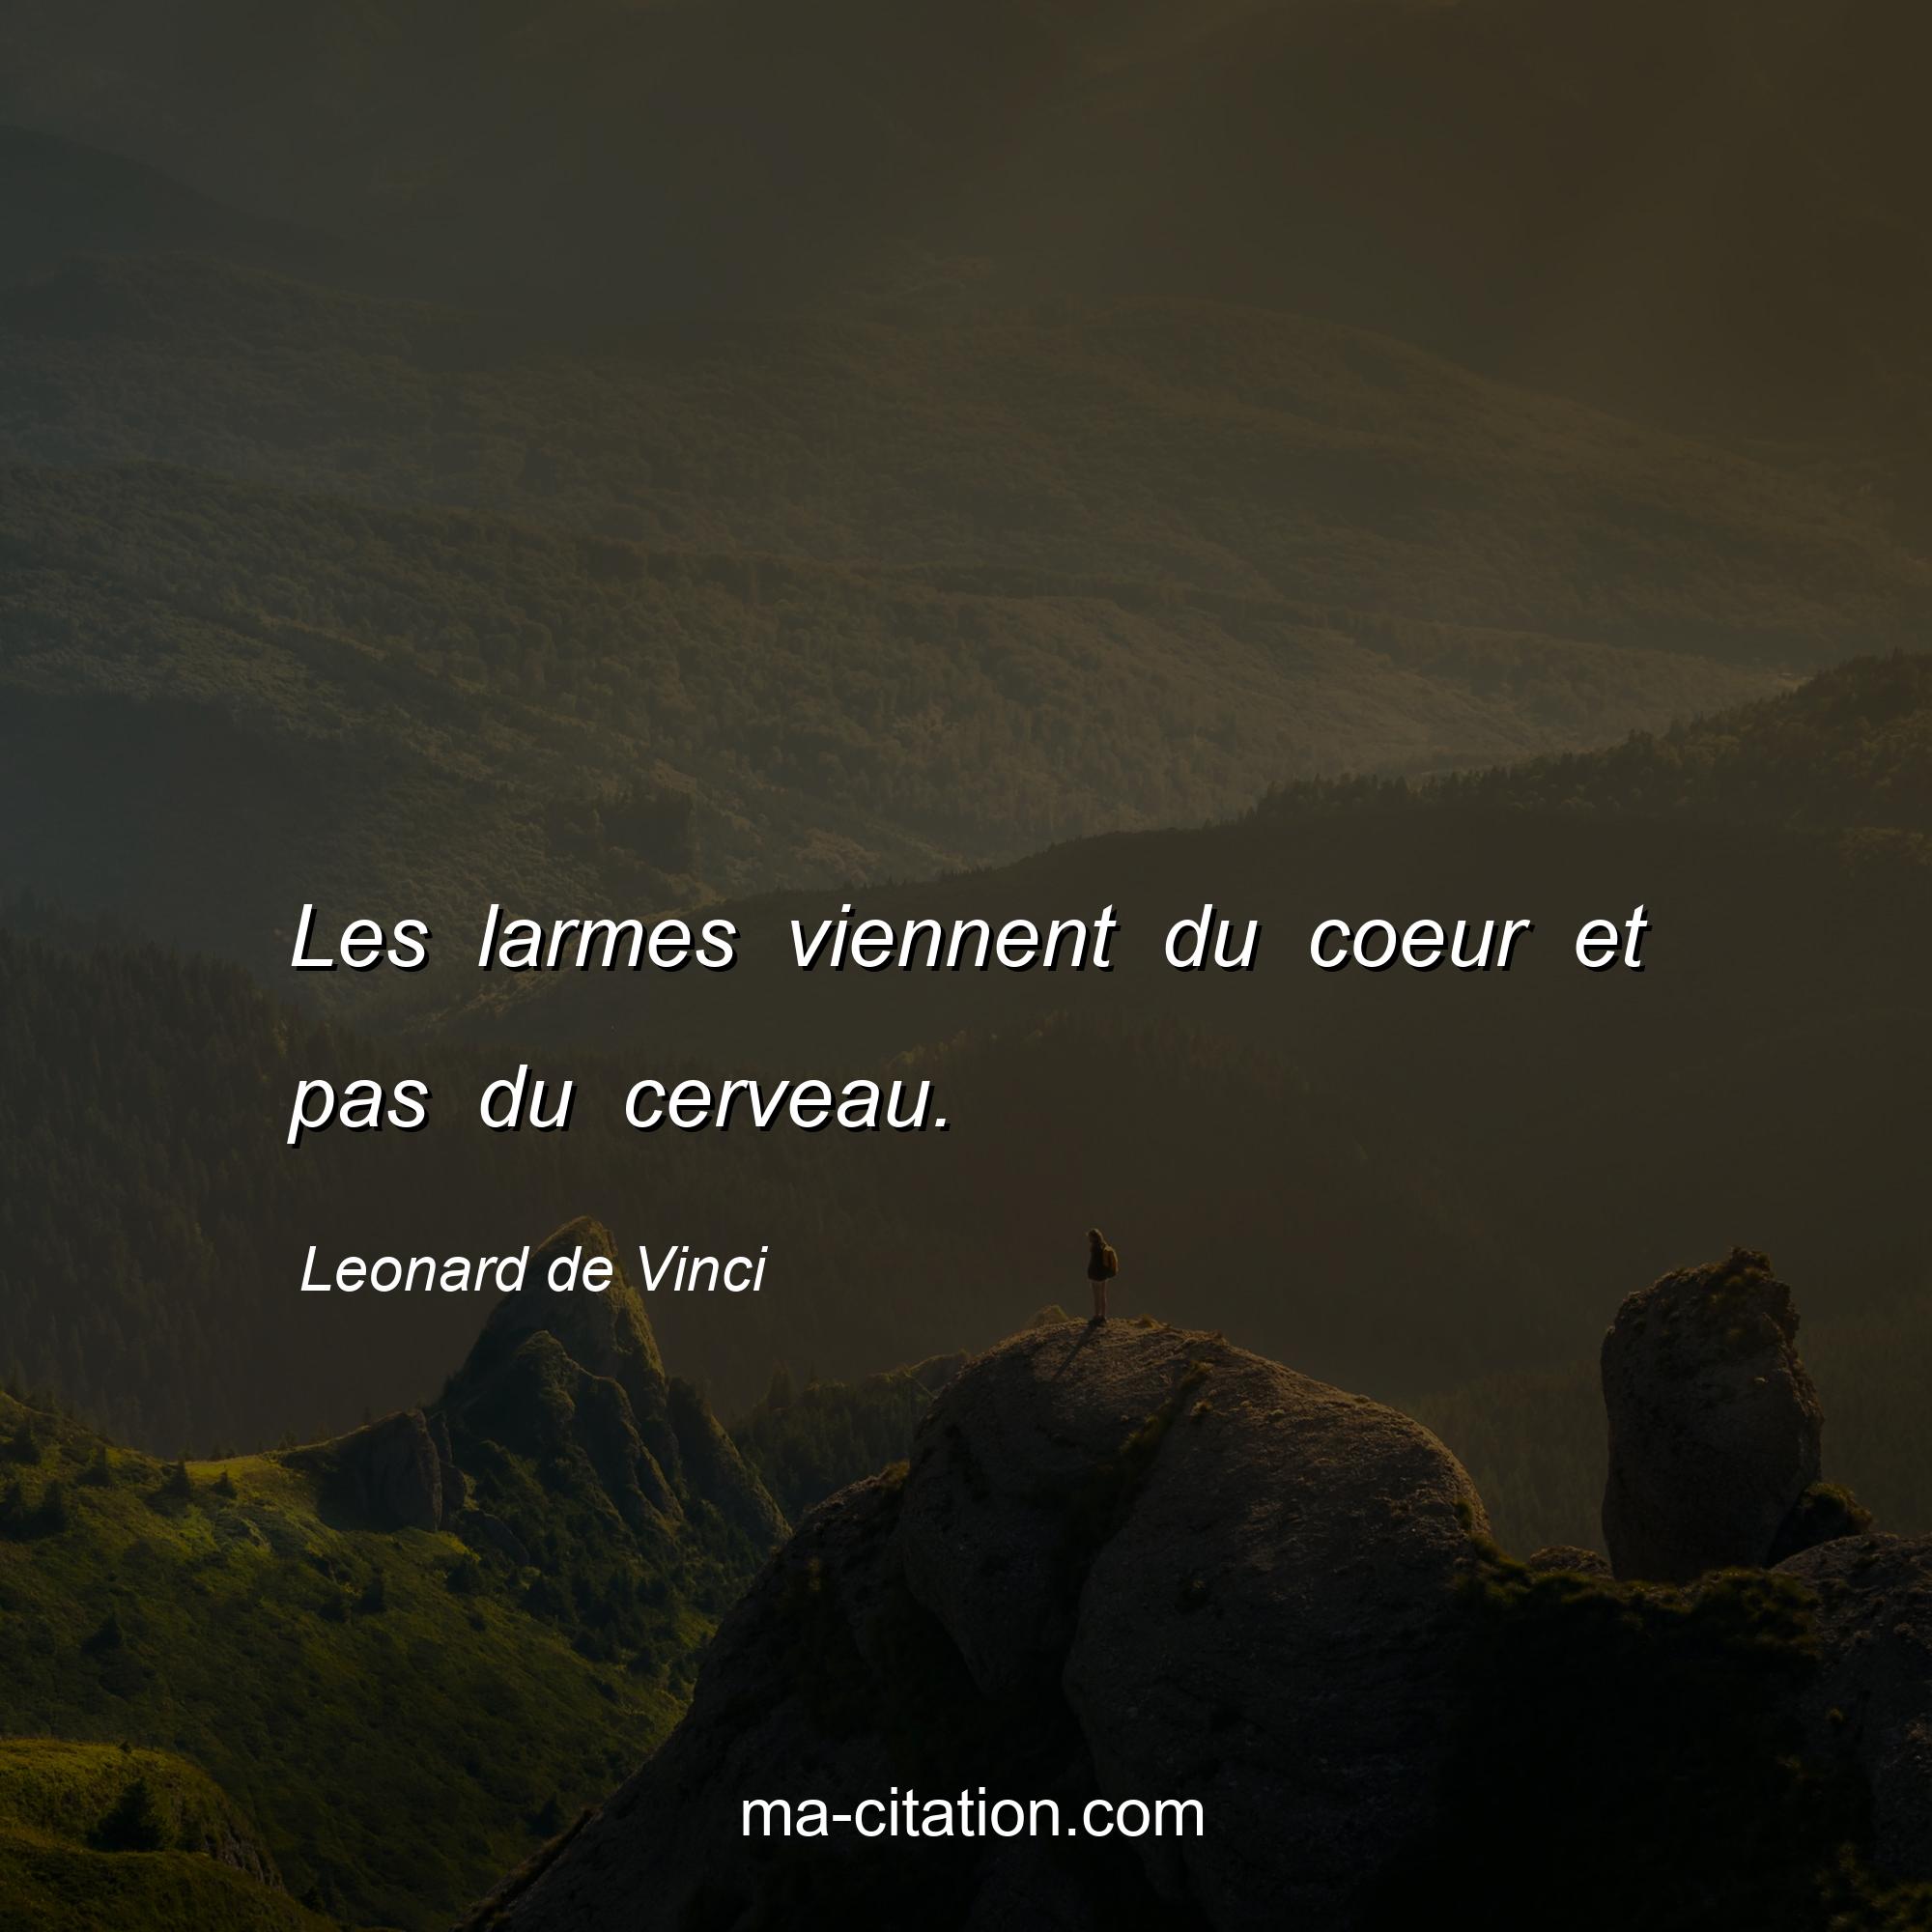 Leonard de Vinci : Les larmes viennent du coeur et pas du cerveau.